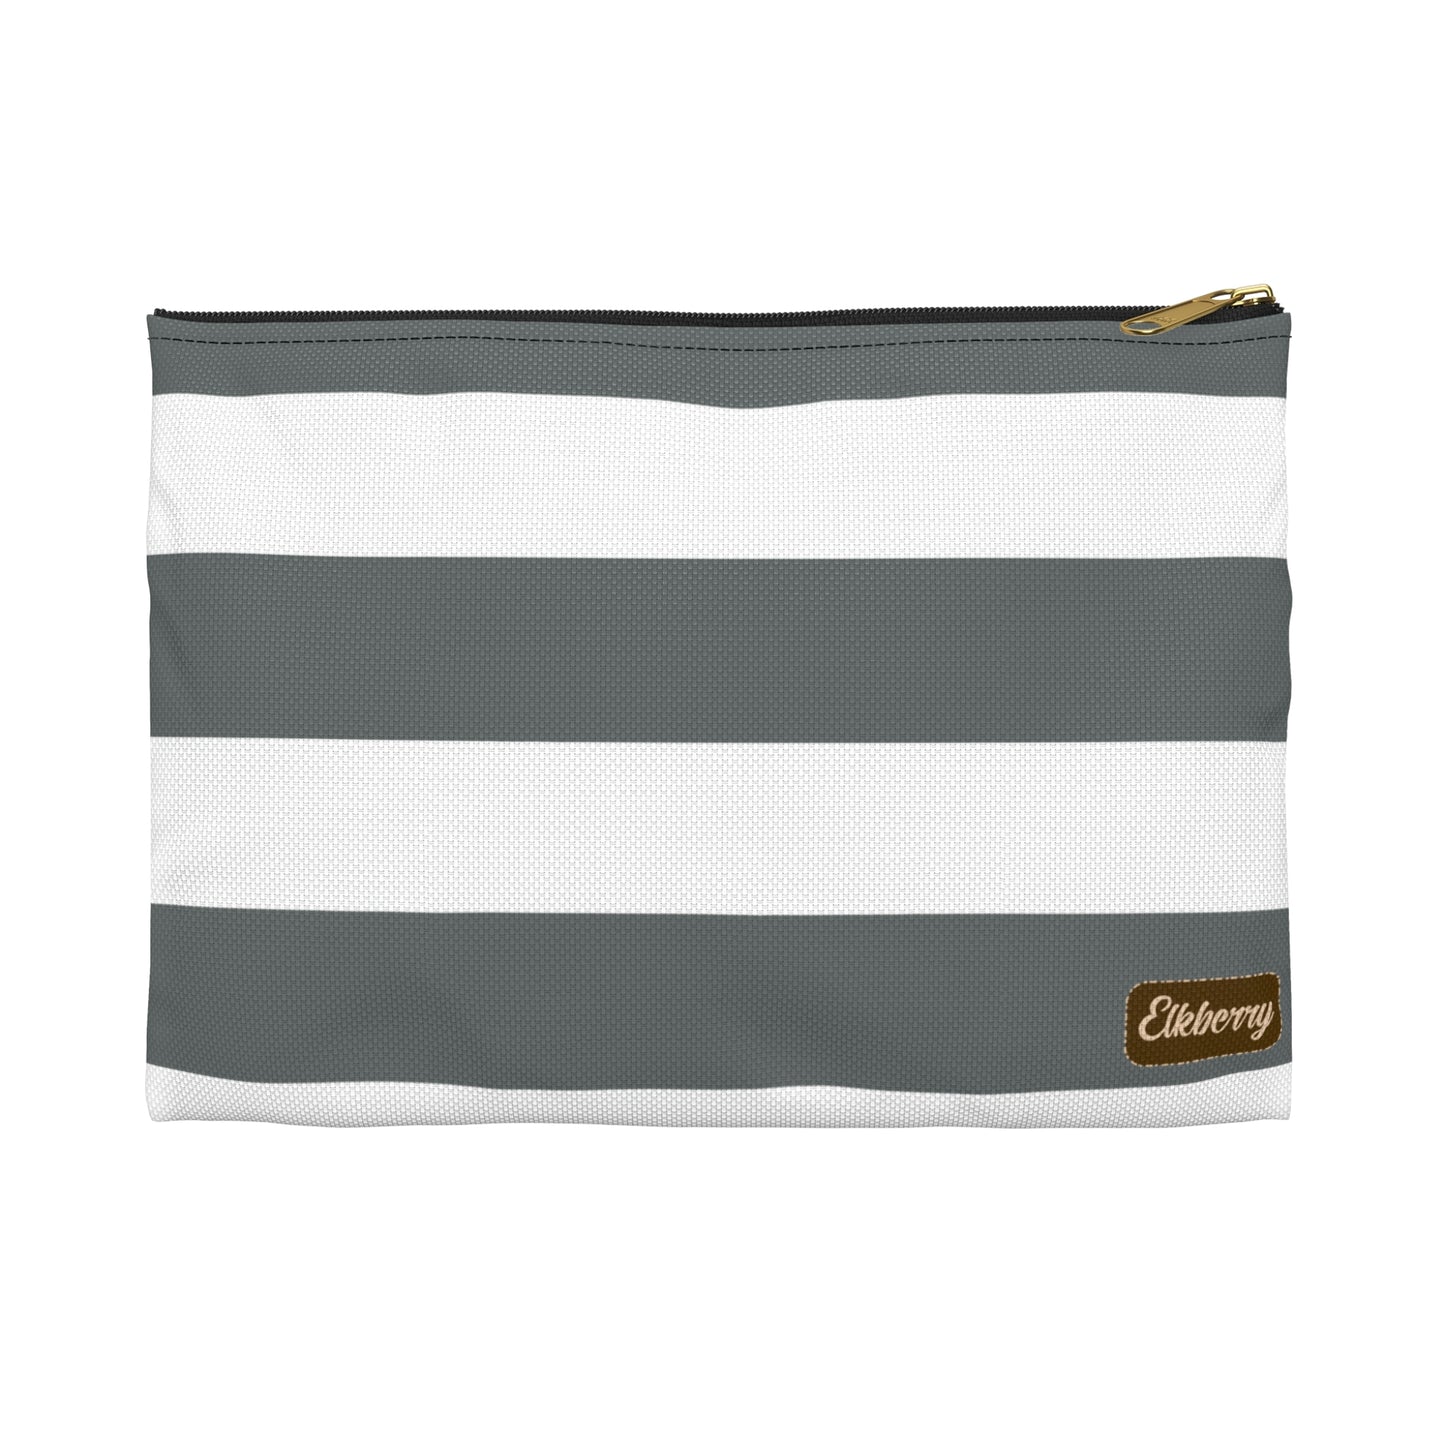 Flat Zipper Pouch - Charcoal Gray/White Stripes